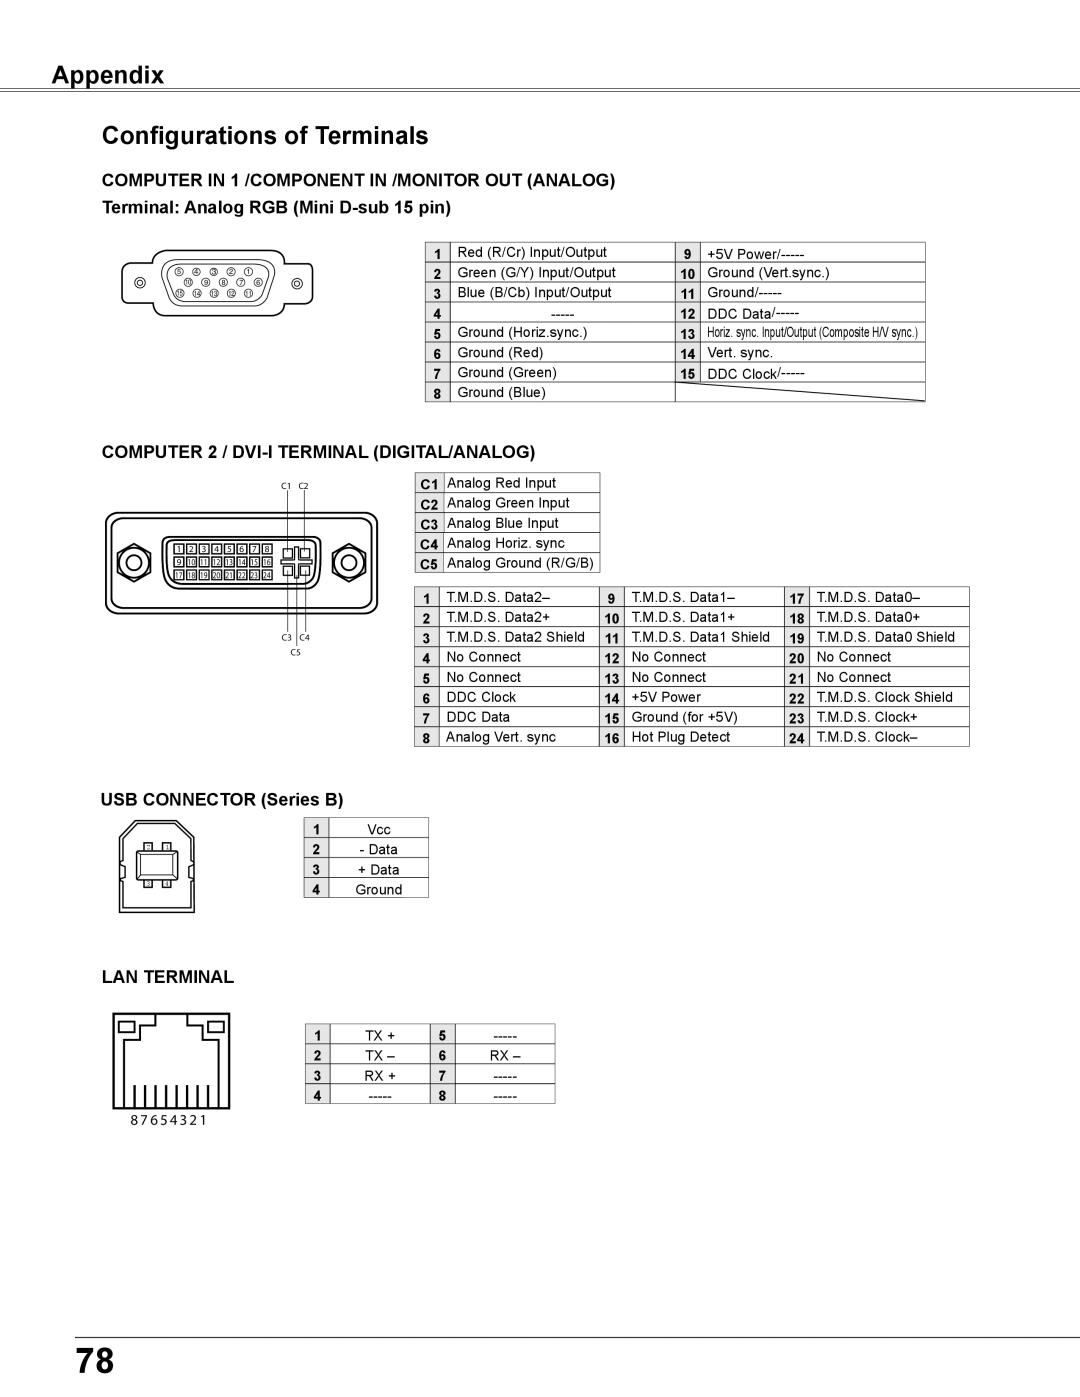 Sanyo PLC-XU355A Appendix Configurations of Terminals, COMPUTER 2 / DVI-I TERMINAL DIGITAL/ANALOG, USB CONNECTOR Series B 